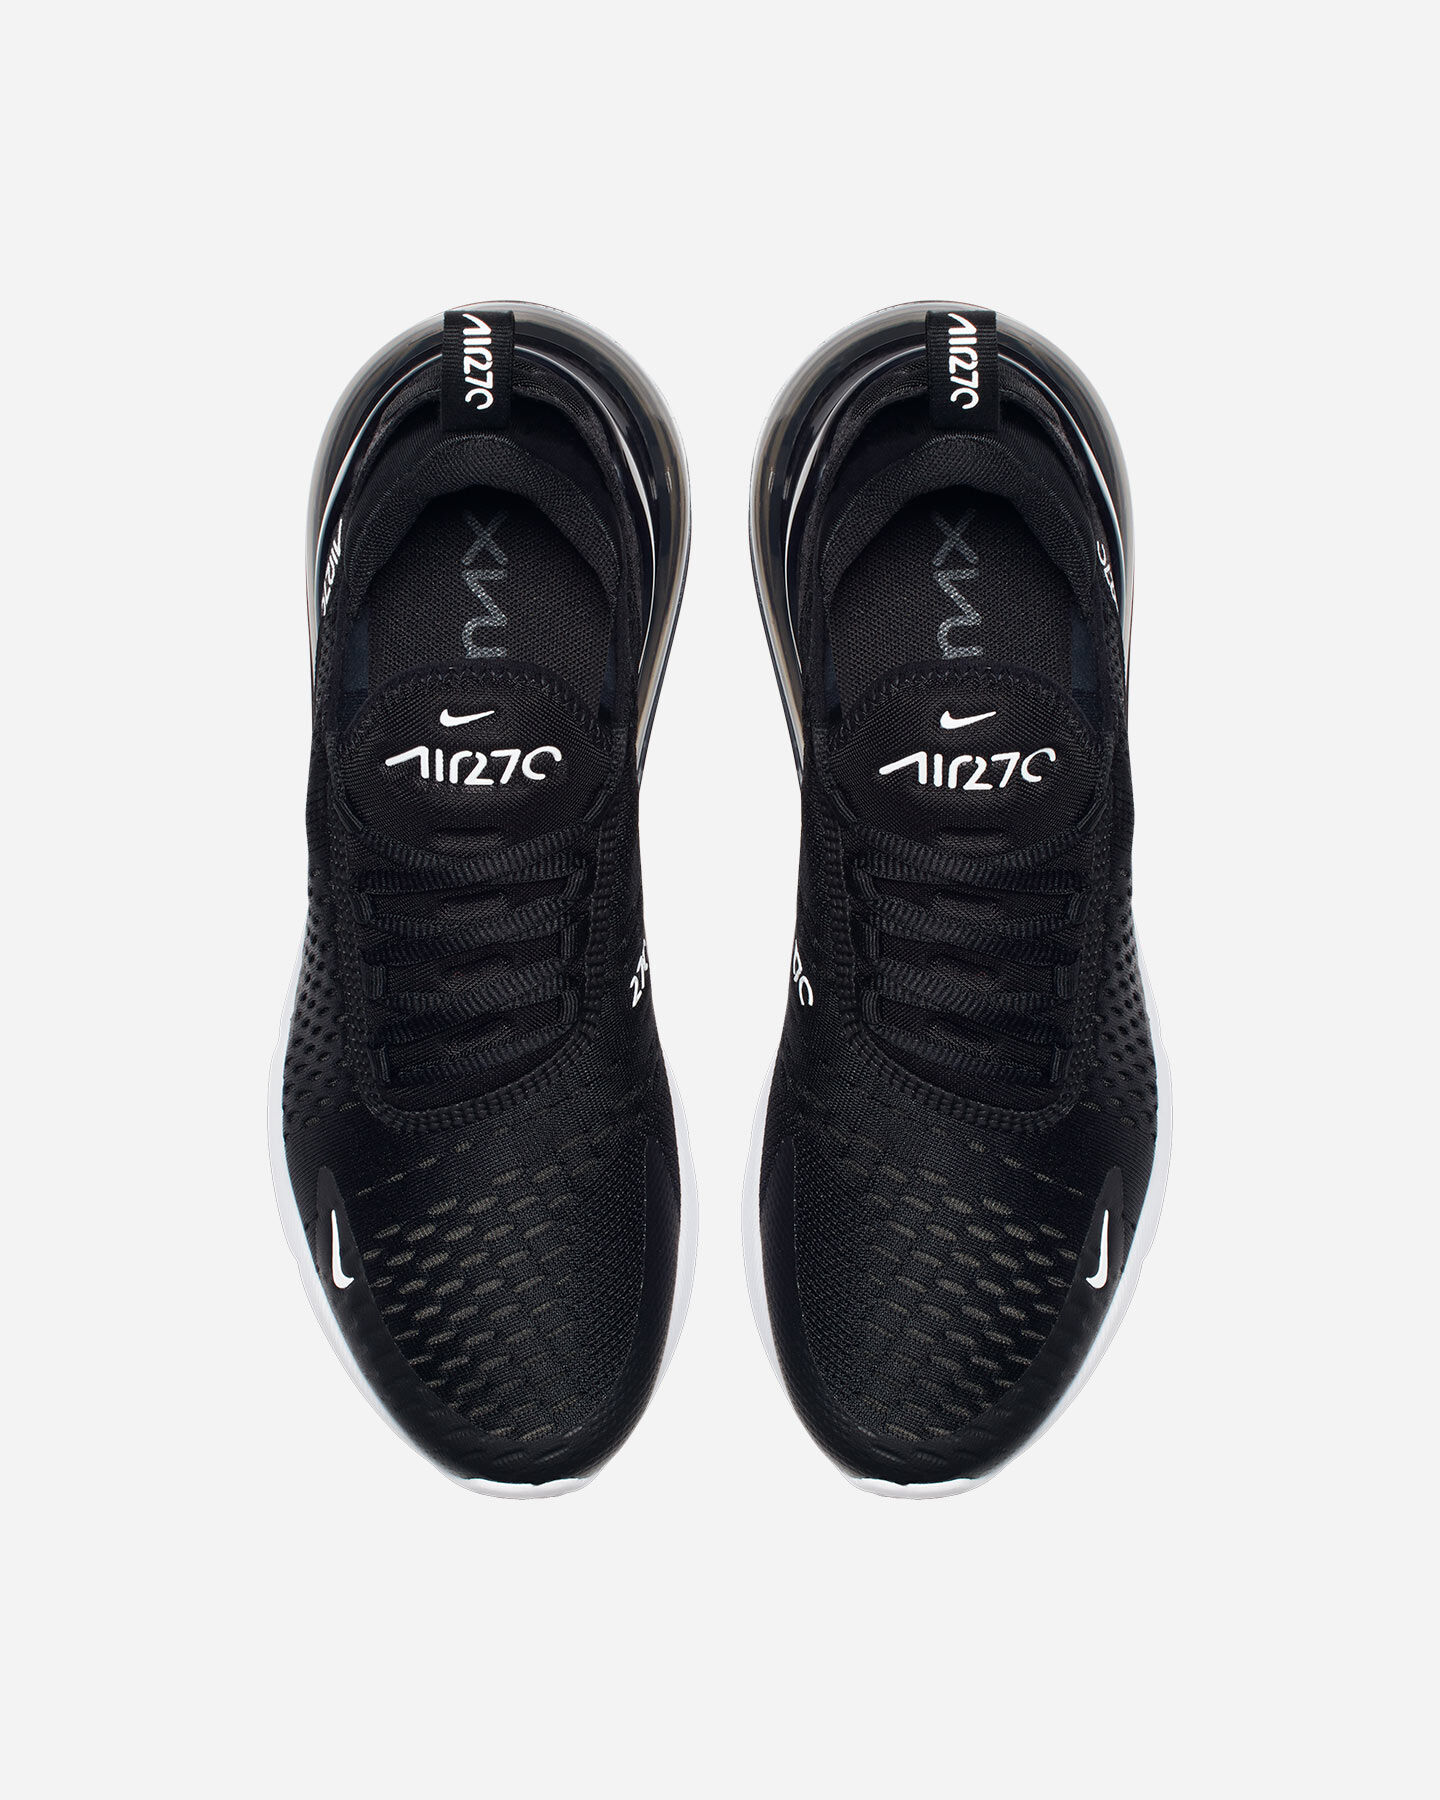  Scarpe sneakers NIKE AIR MAX 270 W S4058238|001|5.5 scatto 3